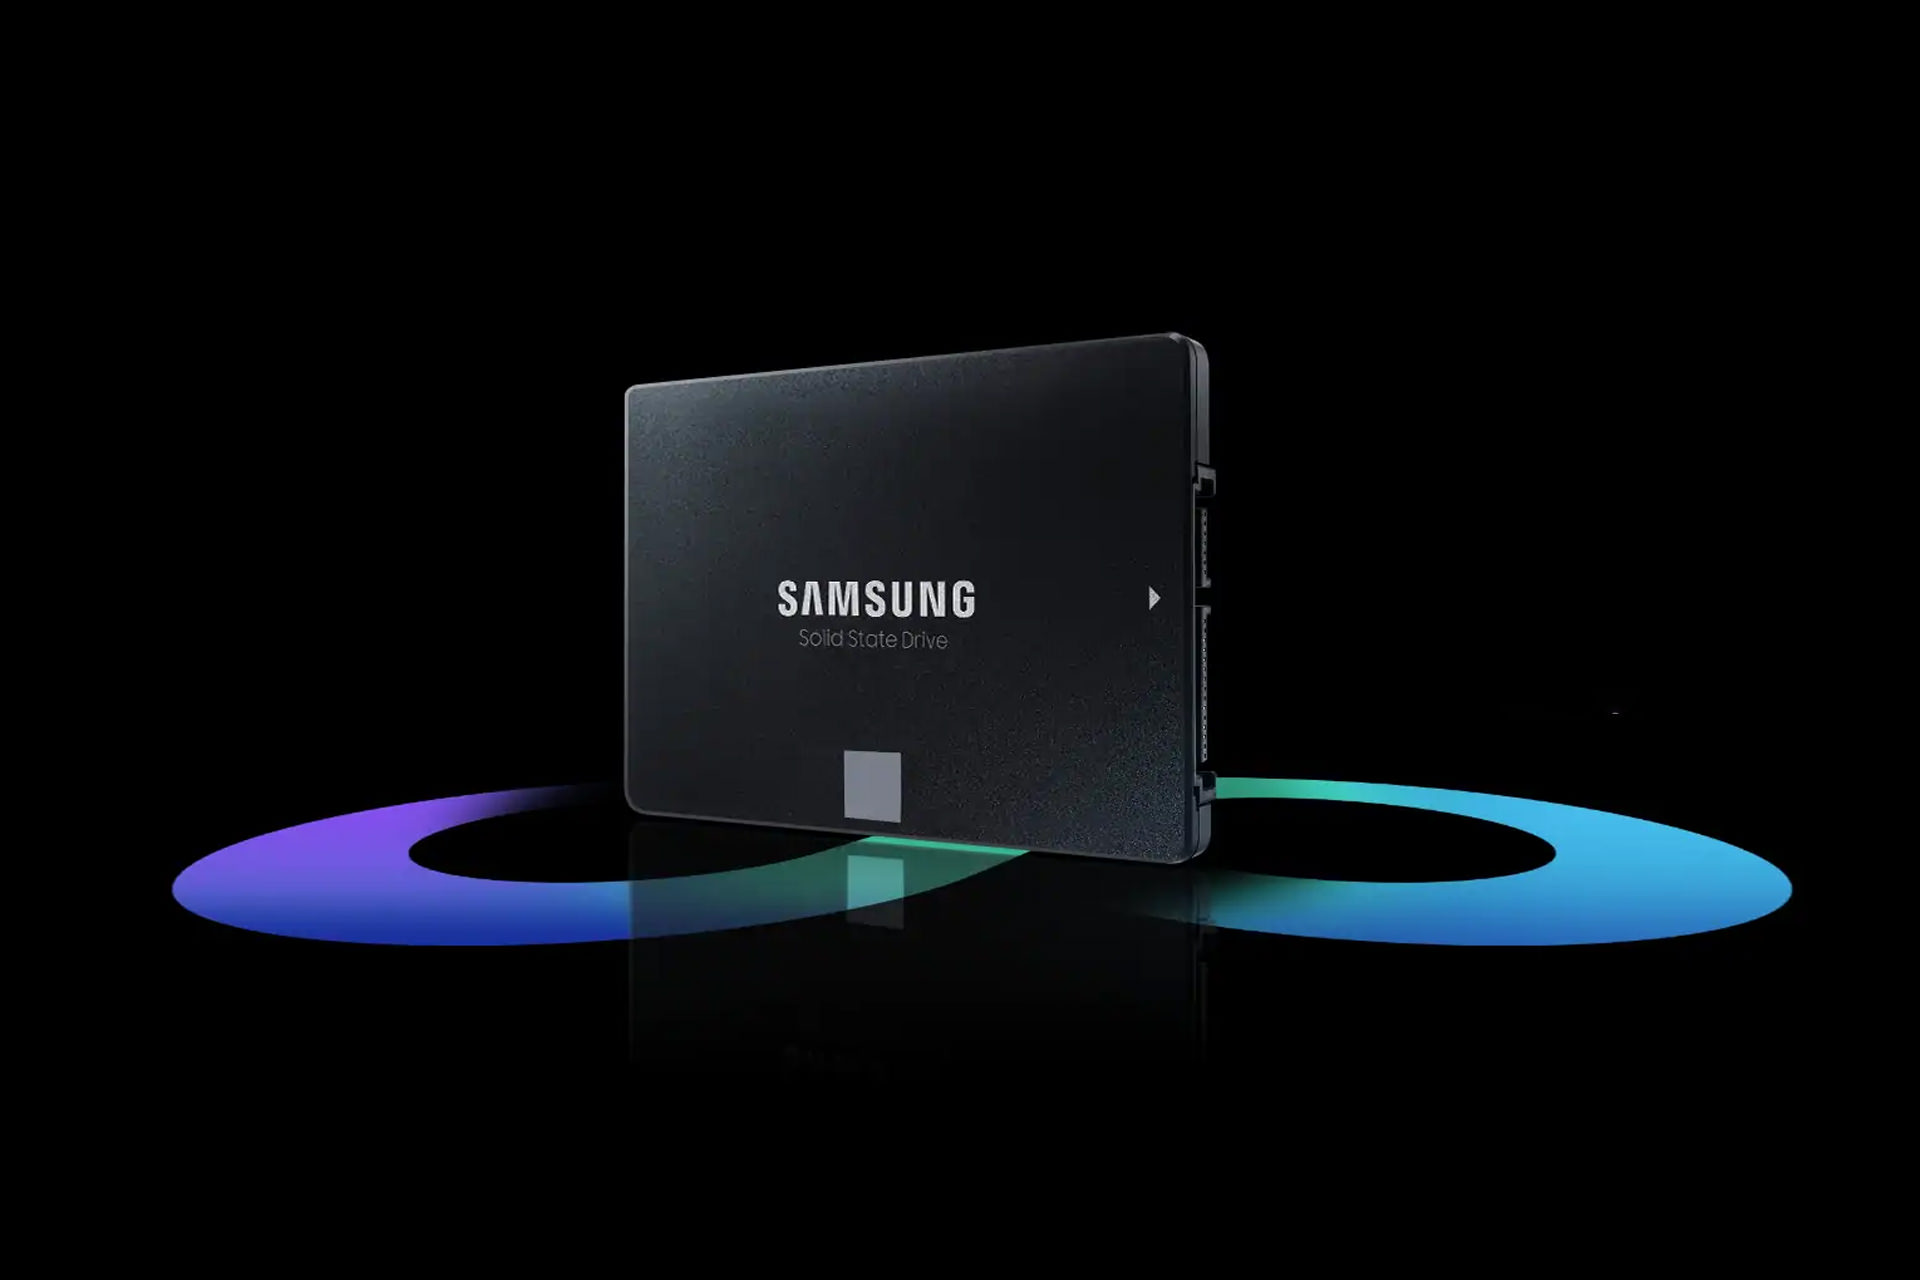 SSD سامسونگ 870 ایوو / Samsung 870 EVO معرفی شد + مشخصات فنی و قیمت - زومیت